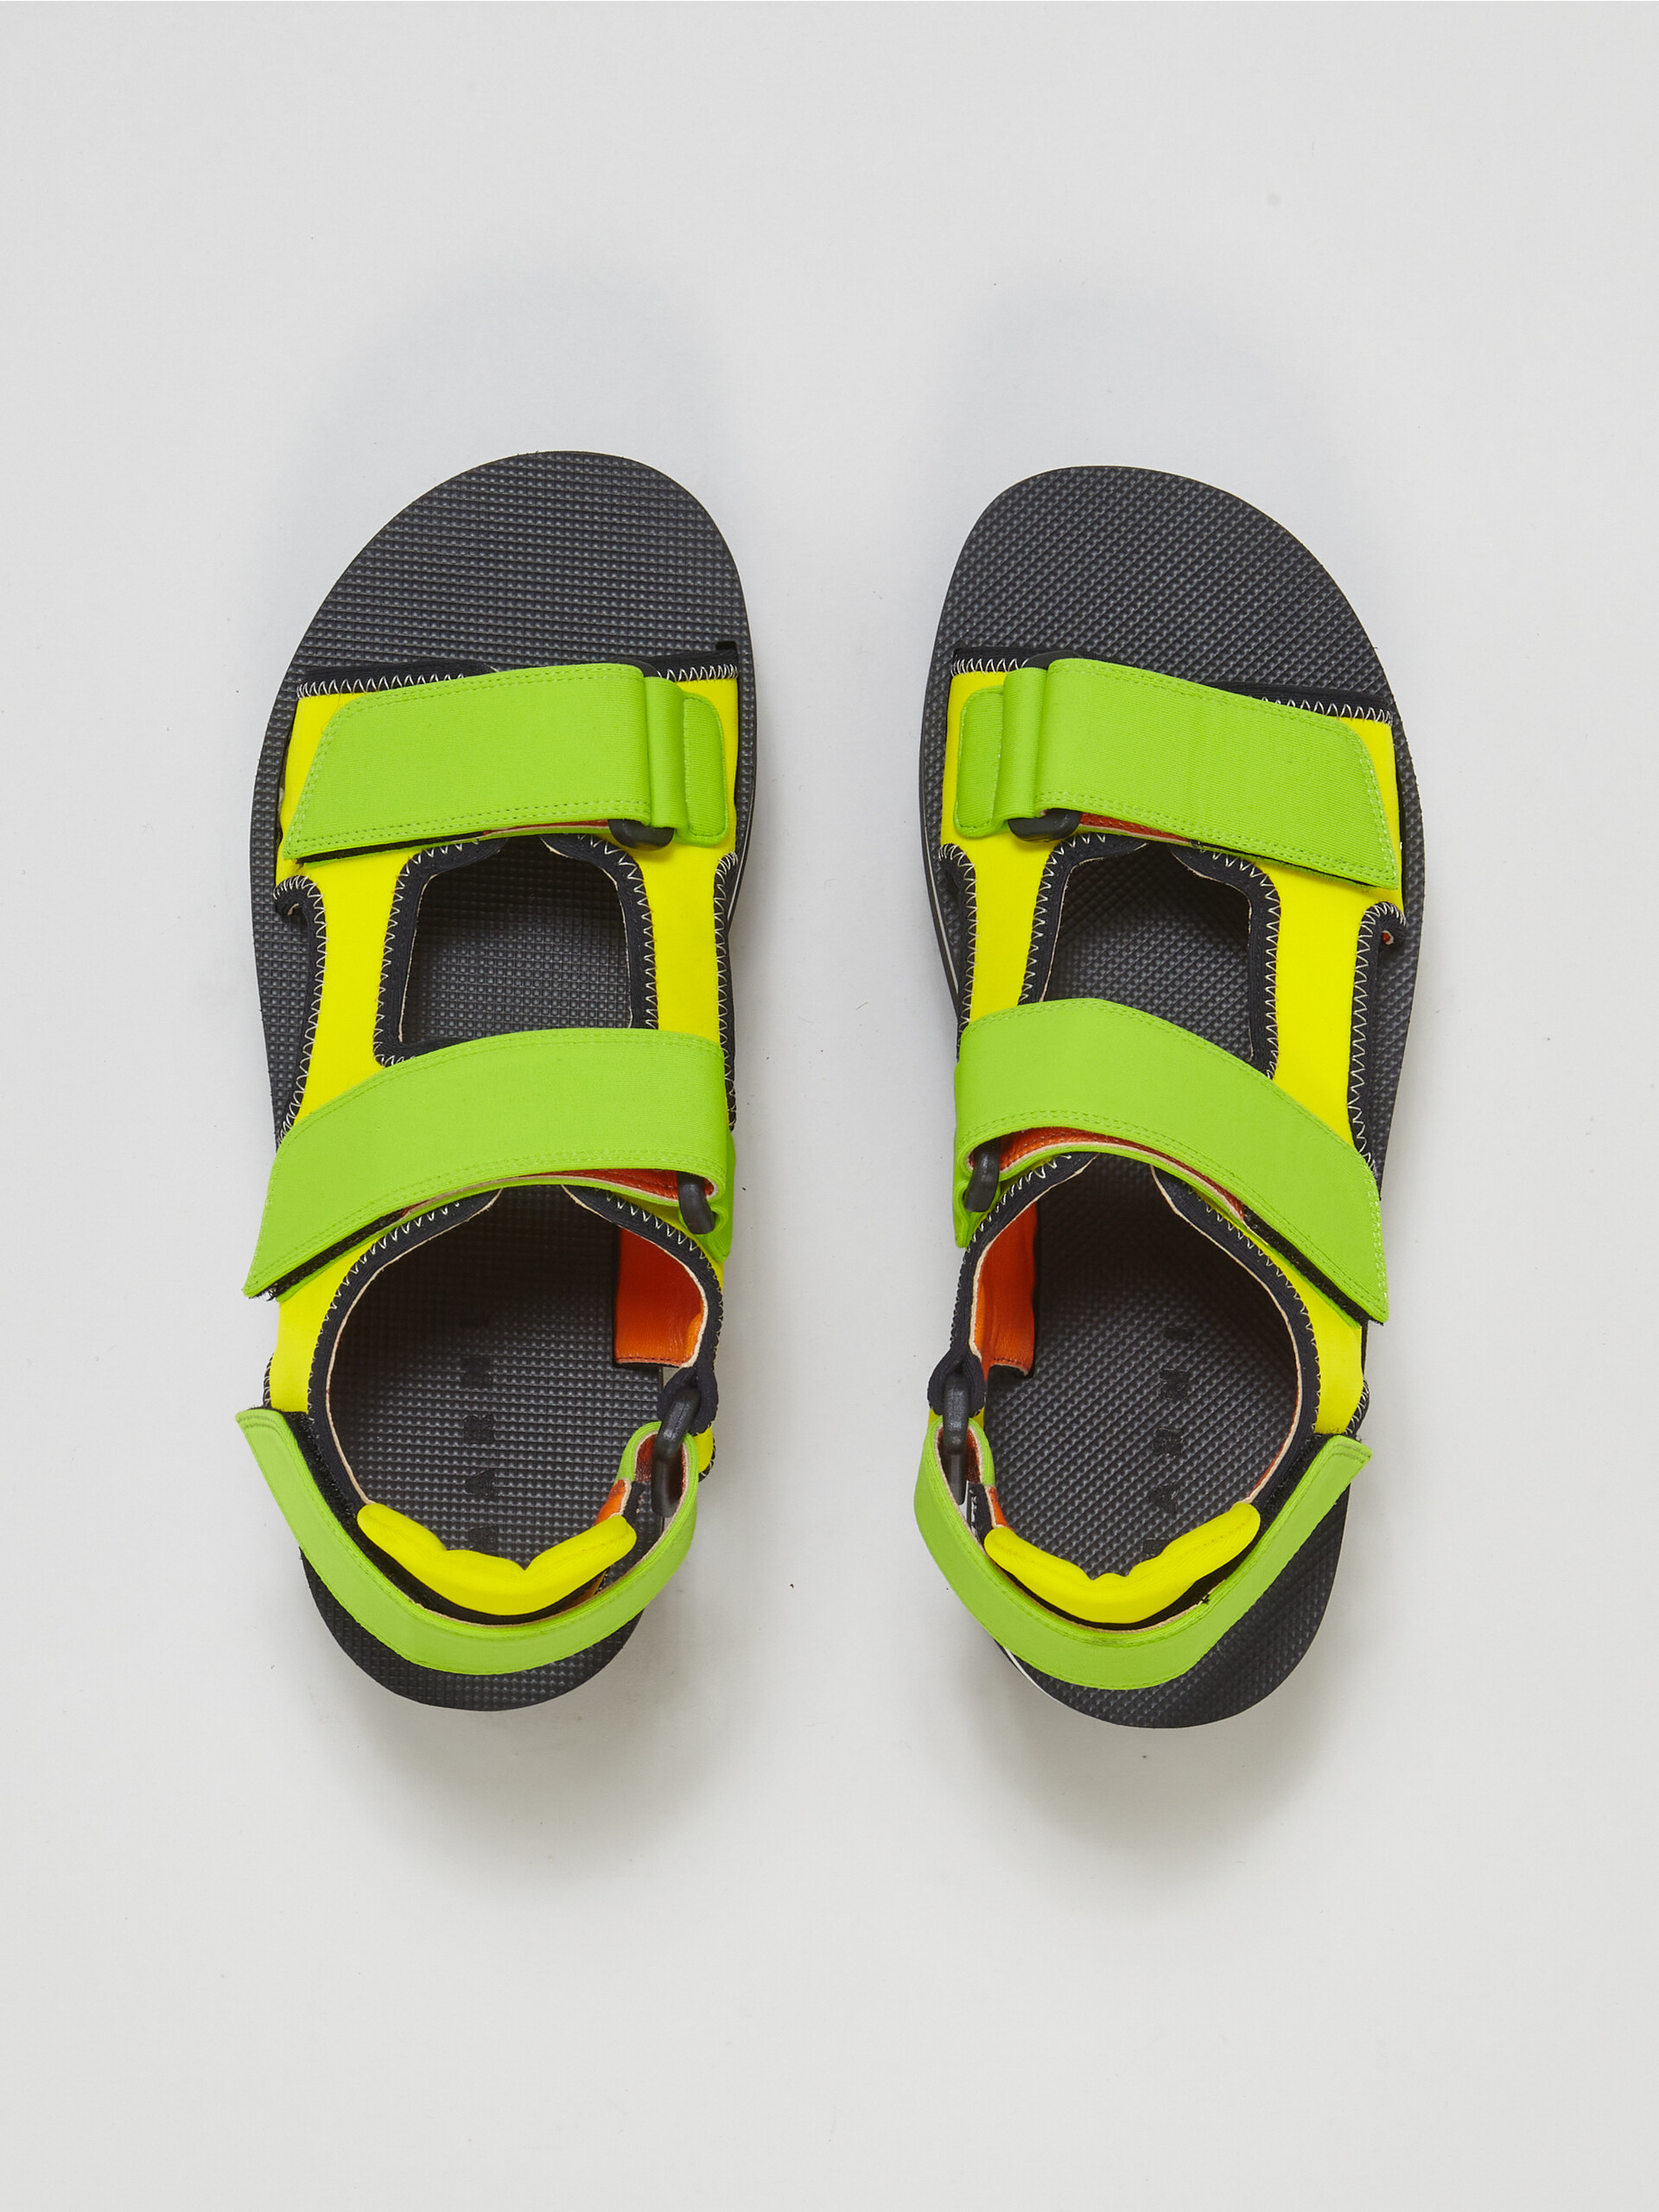 Sandalo in tessuto tecnico giallo e verde - Sandali - Image 4